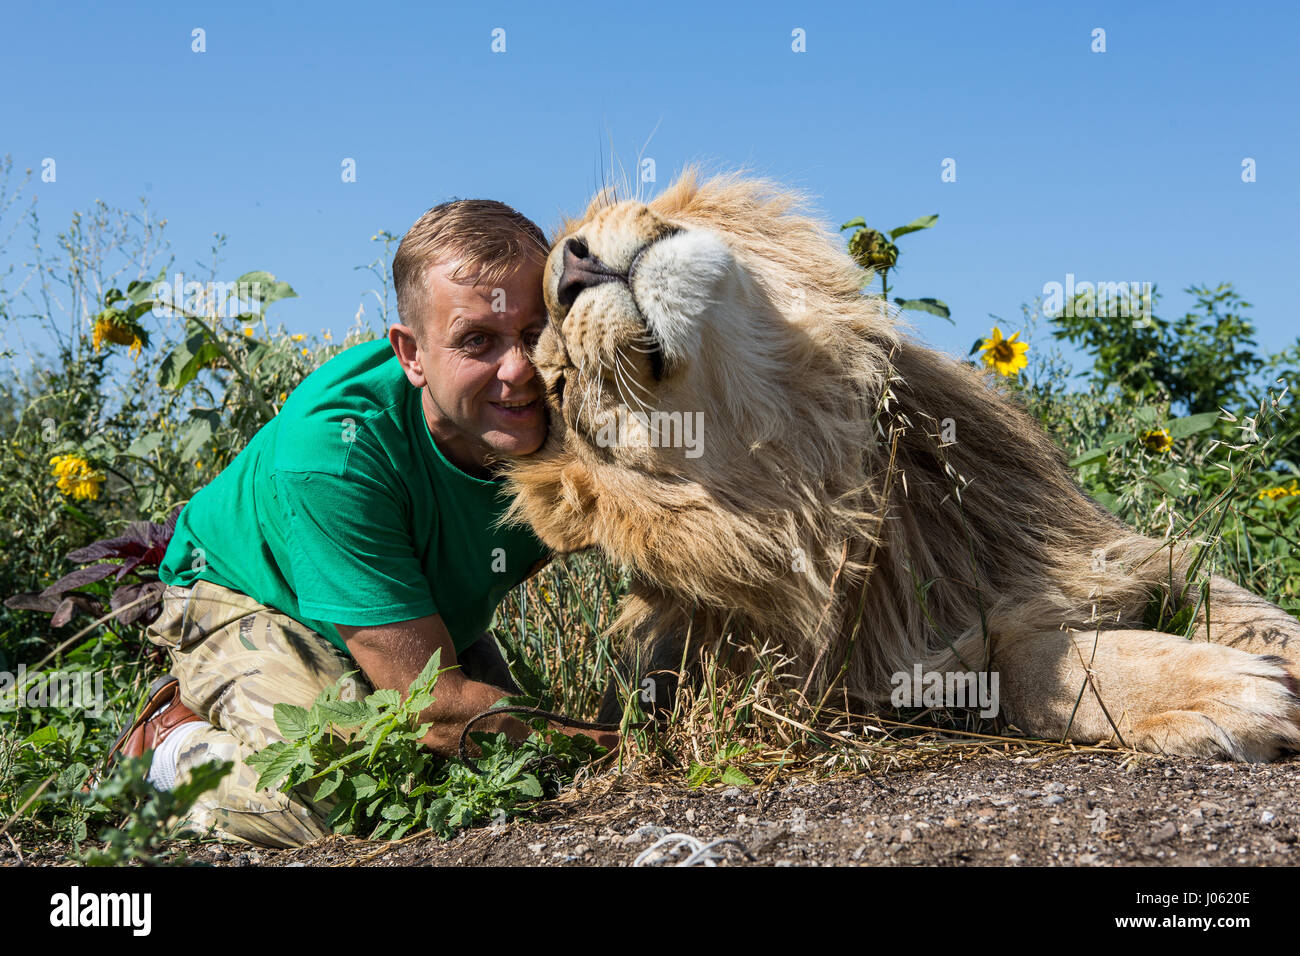 Oleg Zubkov kuscheln zu einem Löwen. ATEMBERAUBENDE Bilder von wilden Löwen und furchtlosen Menschen sitzen übereinander in einem Feld wurden von einem überrascht Fotografen eingefangen. Die surrealen Bilder zeigen stellen die 418-Pfund-Löwen begrüßen ihren menschlichen Begleiter wie sie gerne für Selfies, einander küssen auf den Mund und ein weißer Löwe streckt sogar eine helfende Pfote zu einem Mann in einem Teich schwimmen.  Andere Bilder zeigen die Löwen liebevoll Gruß Menschen aus ihren Autos und ein unglaubliches Bild, ein Mann tapfer legt seinen Arm im Mund des Tieres für die Kamera posieren. Die spektakuläre ich Stockfoto